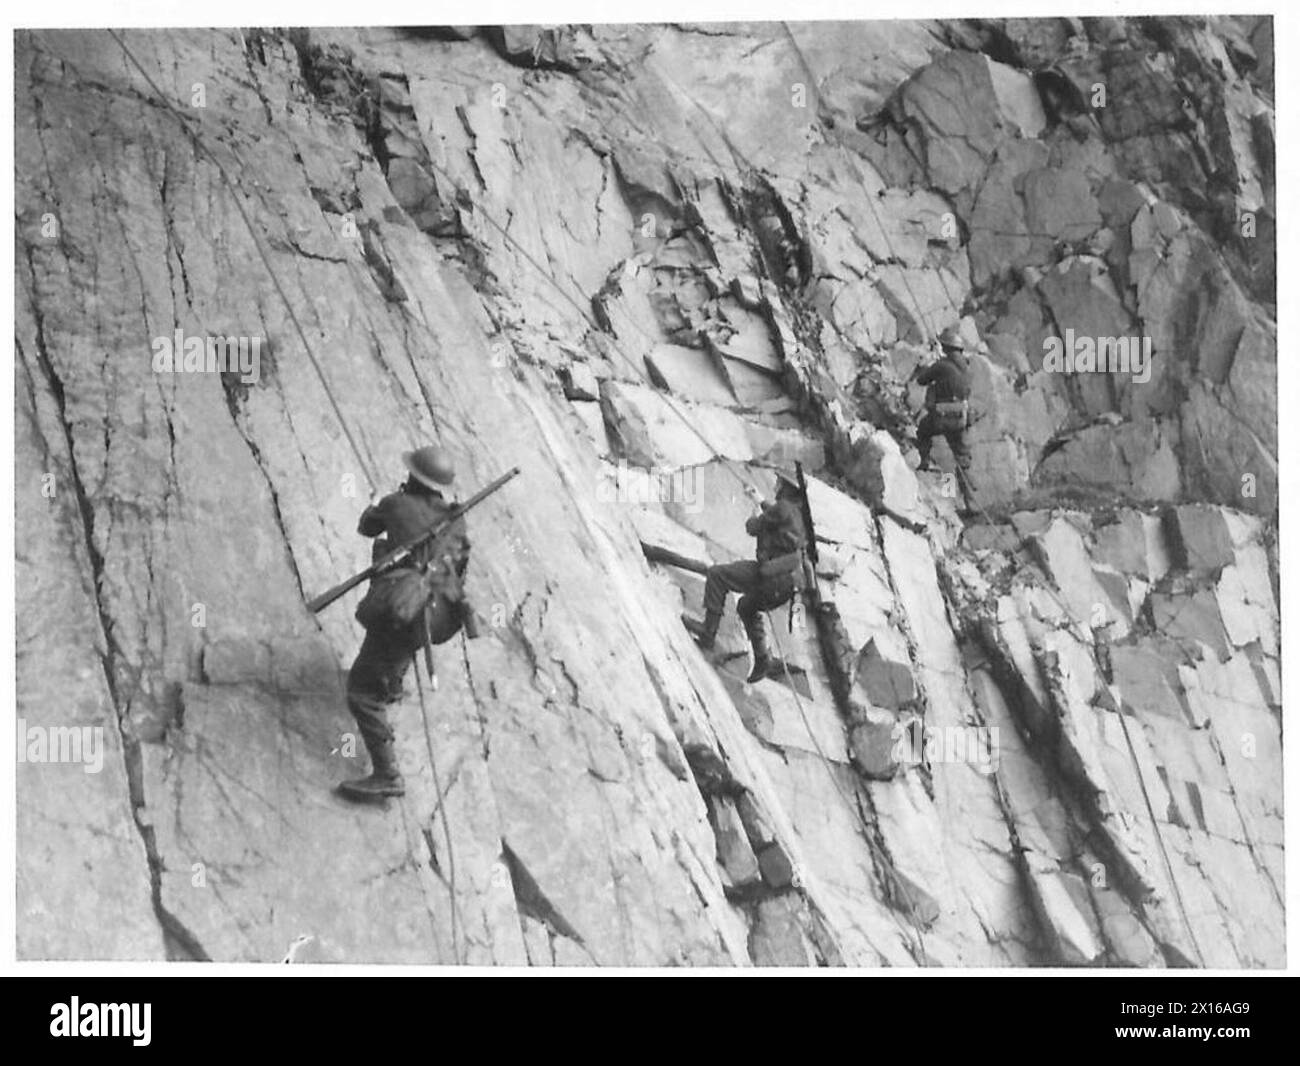 DER KÖNIG BEOBACHTET LANDUNGSÜBUNGEN - Truppen, die während der Übungen eine felsige Klippe kalken, britische Armee Stockfoto